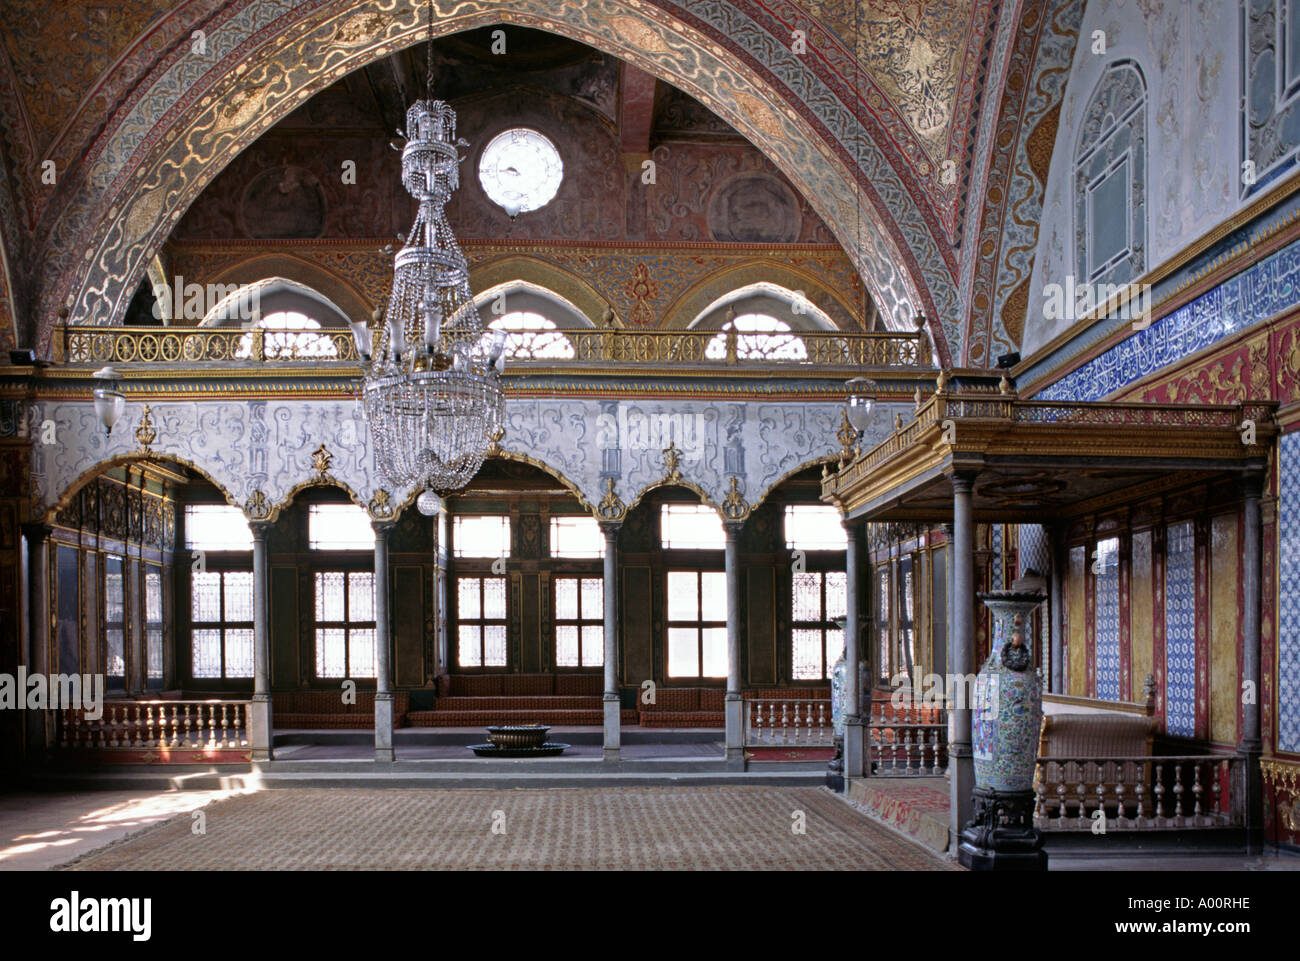 Sultani palco in ricezione hall all'interno dell'Harem che ospitava 1200 harem di donne nel 1575 Palazzo Topkapi Istanbul Foto Stock